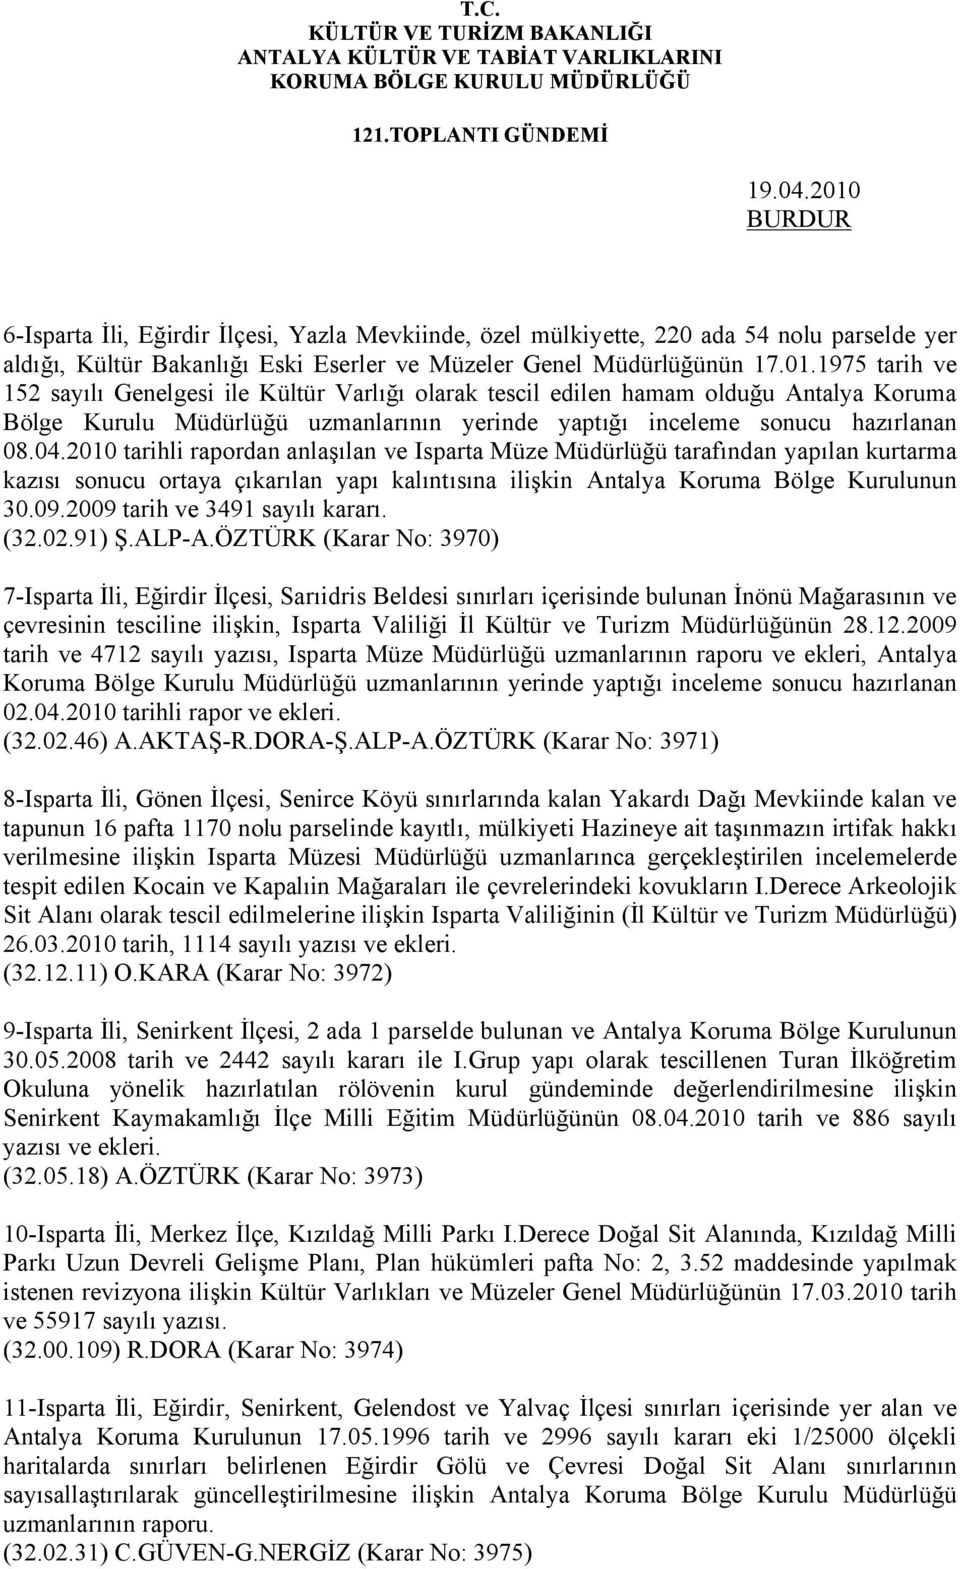 04.2010 tarihli rapordan anlaşılan ve Isparta Müze Müdürlüğü tarafından yapılan kurtarma kazısı sonucu ortaya çıkarılan yapı kalıntısına ilişkin Antalya Koruma Bölge Kurulunun 30.09.